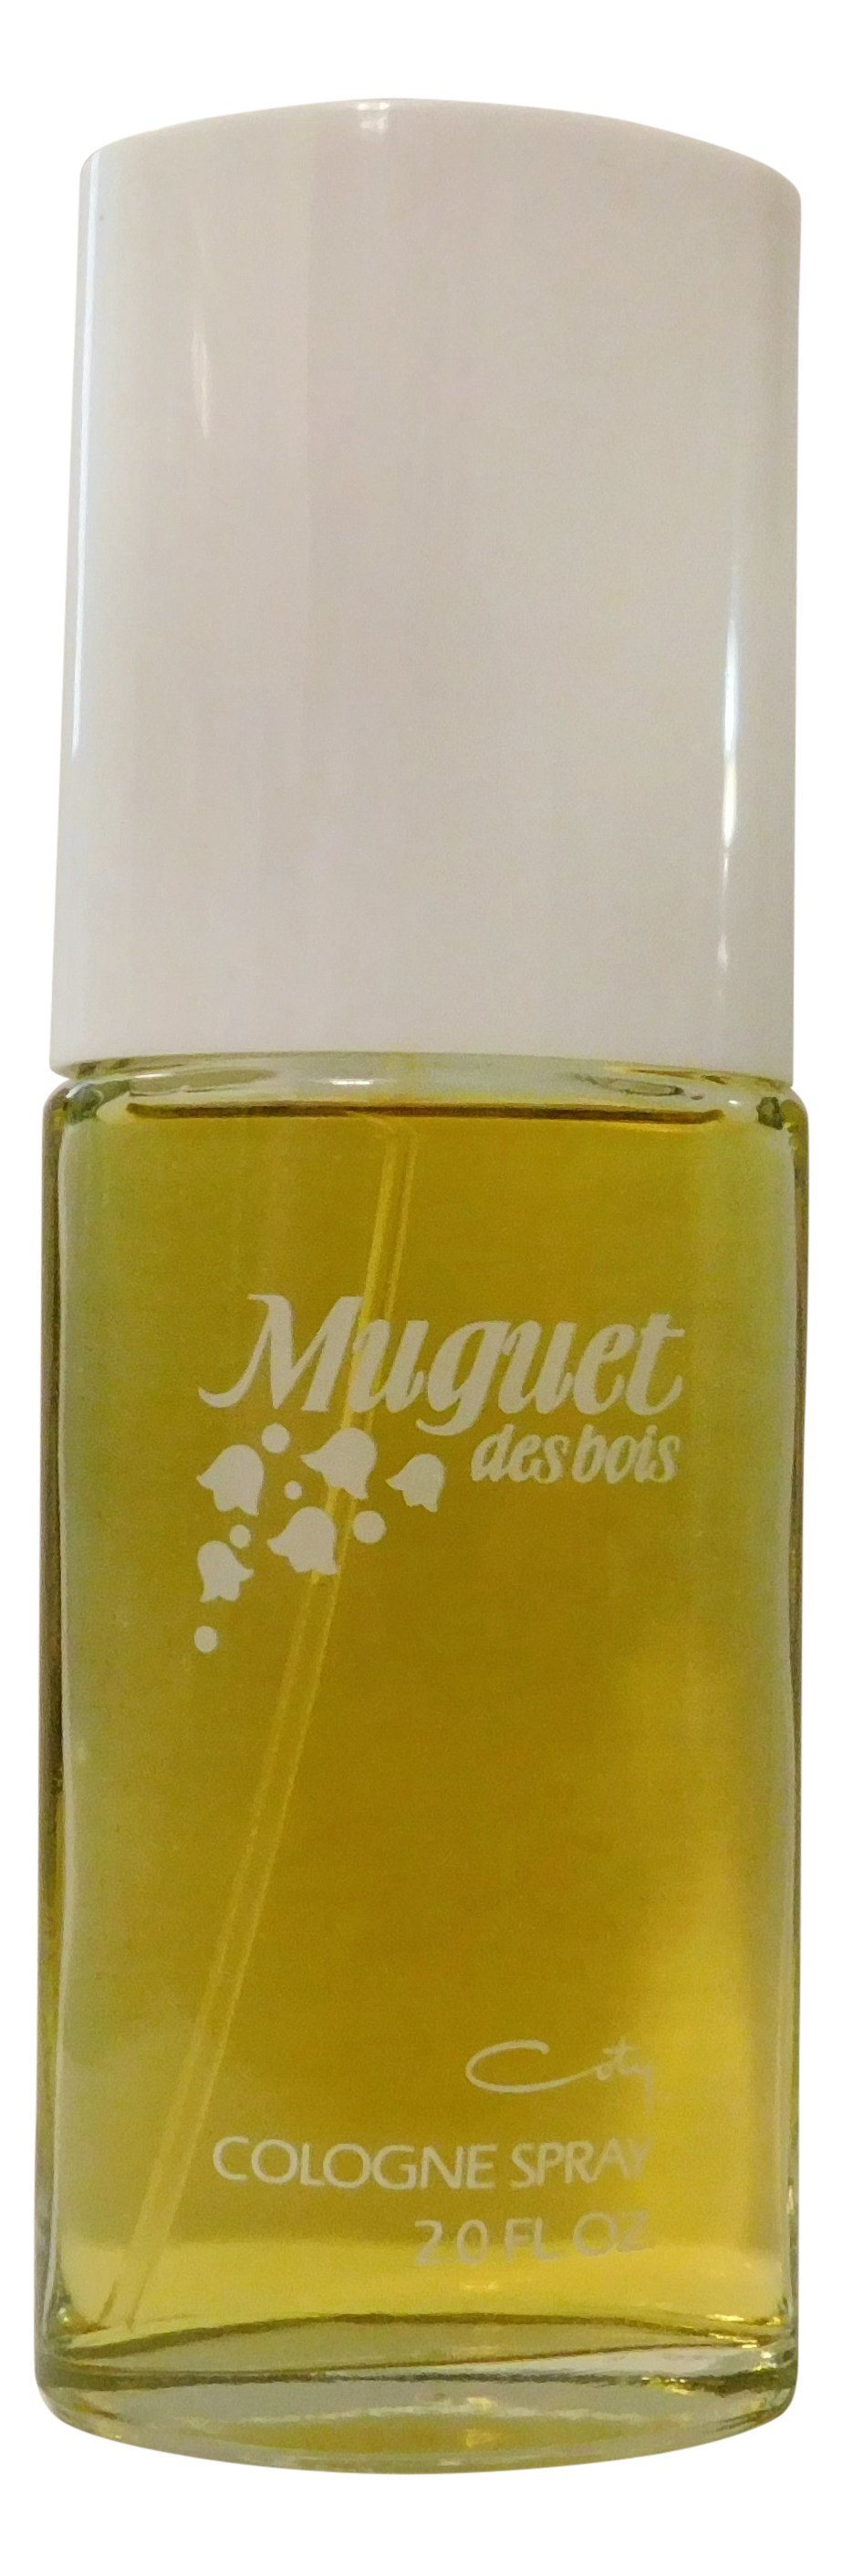 Muguet des Coty » Reviews Perfume